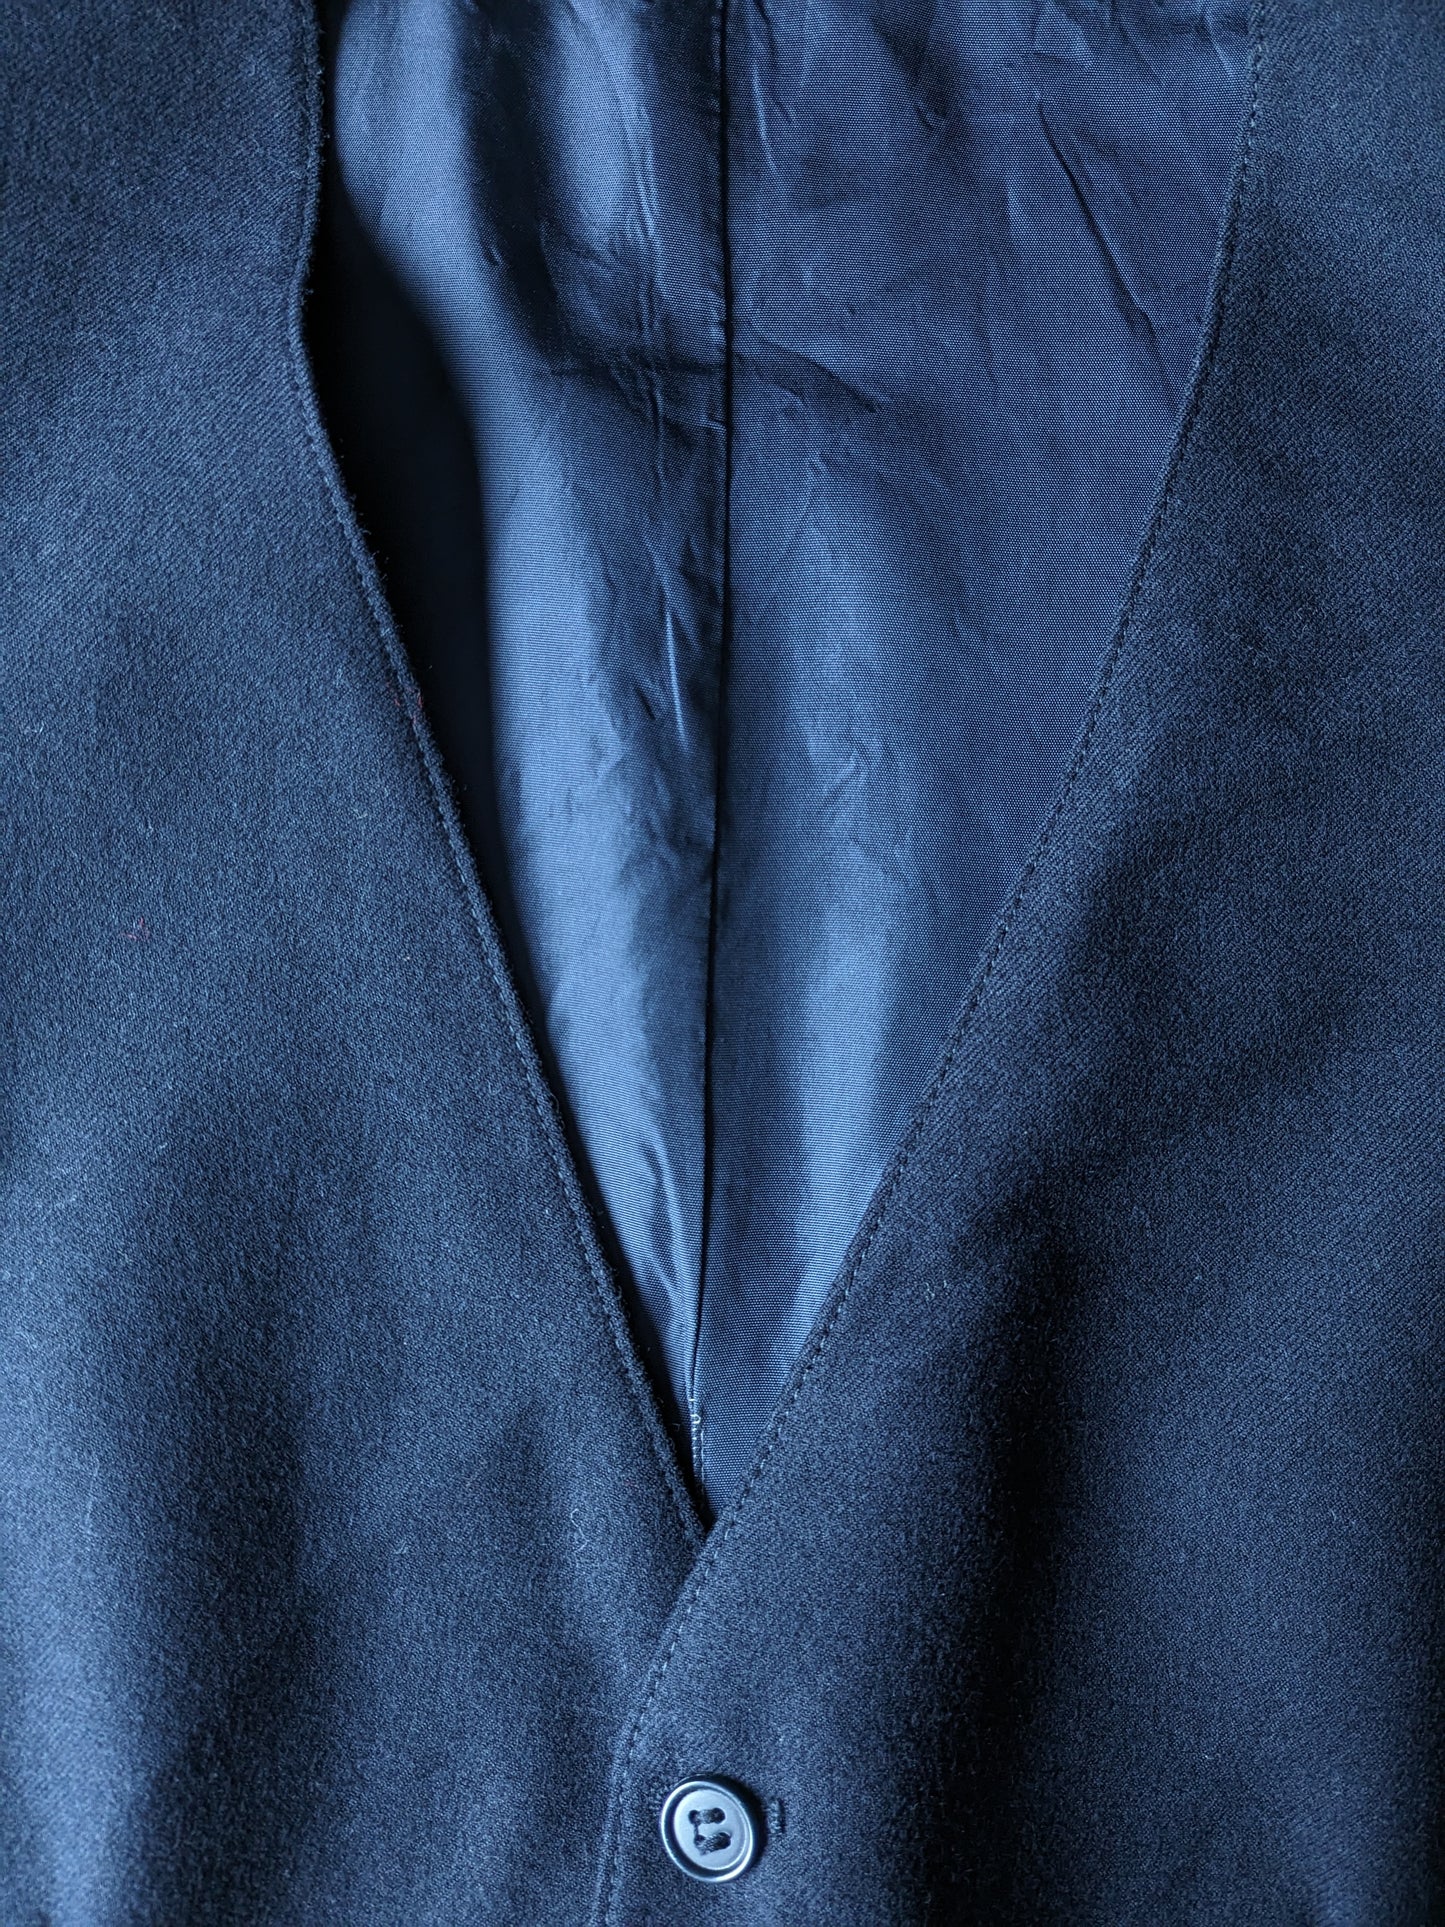 Gilet di lana. Colorato blu scuro. Size S. #328.